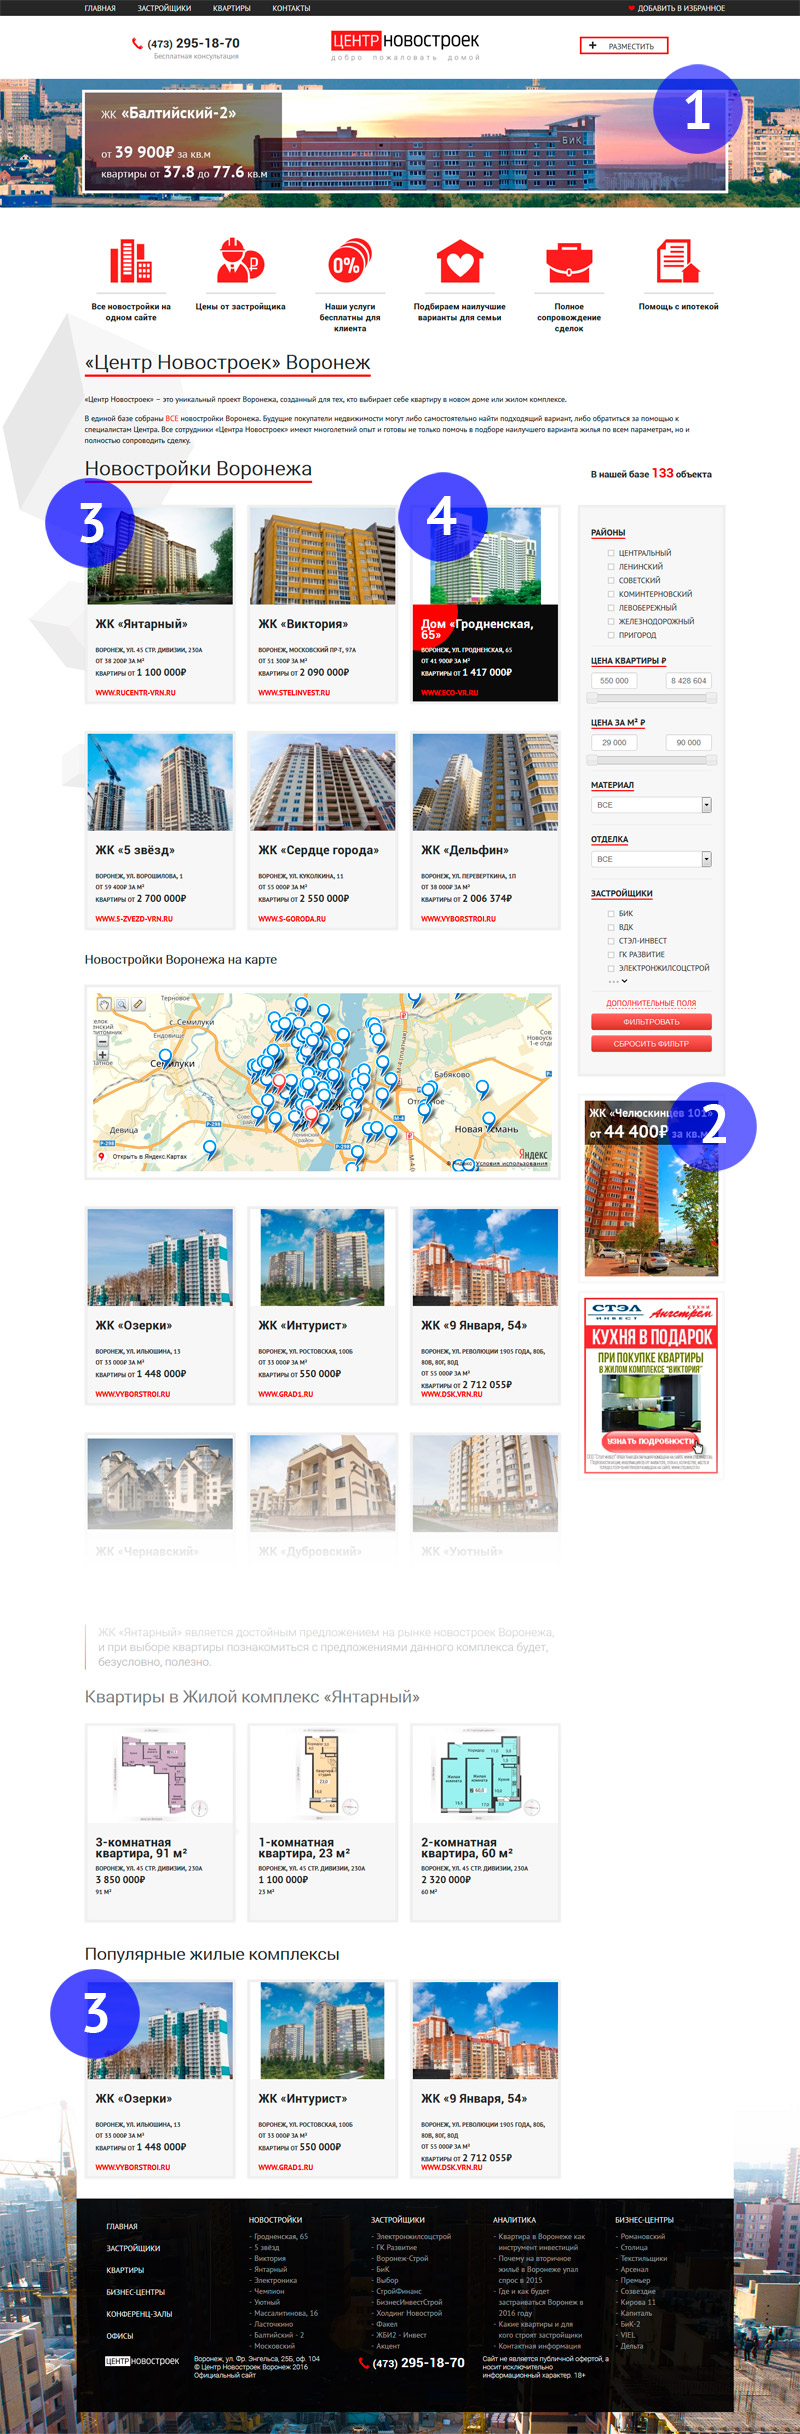 Реклама новостройки или жилого комплекса в Воронеже на нашем сайте